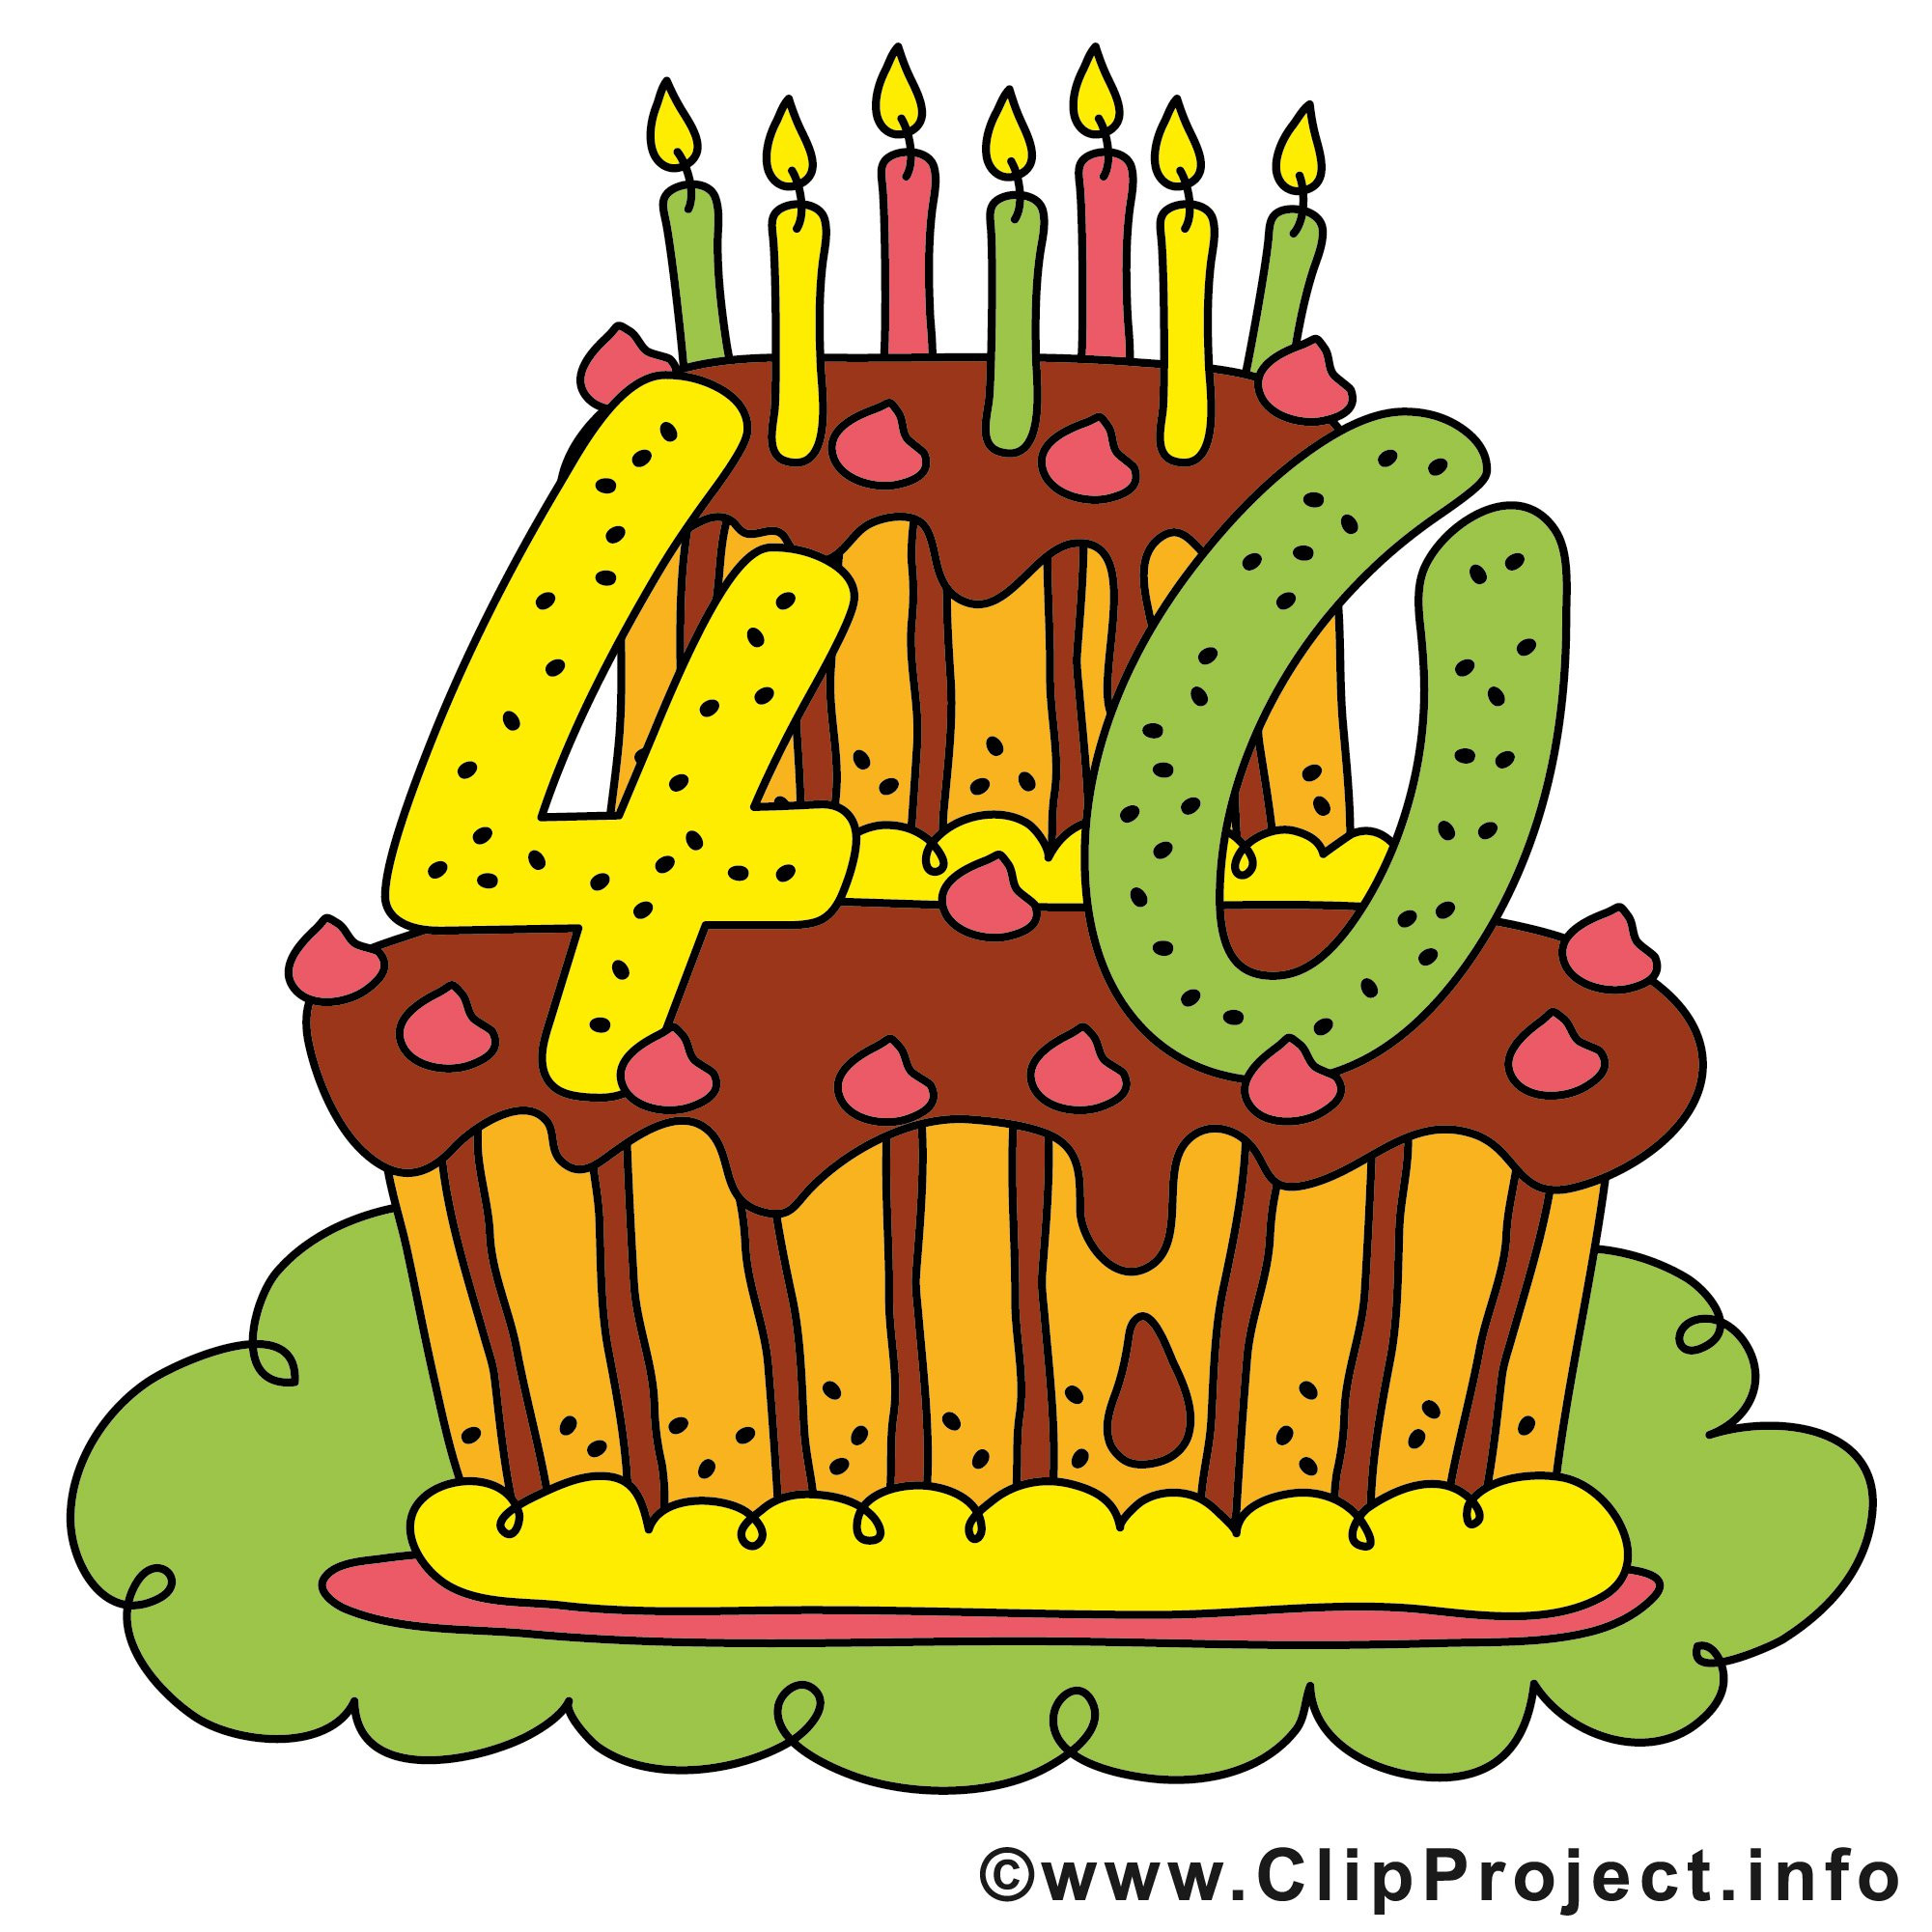 Geburtstagssprüche 40 Frau
 Einladung Zum 40 Geburtstag Einladung Zum 40 Geburtstag